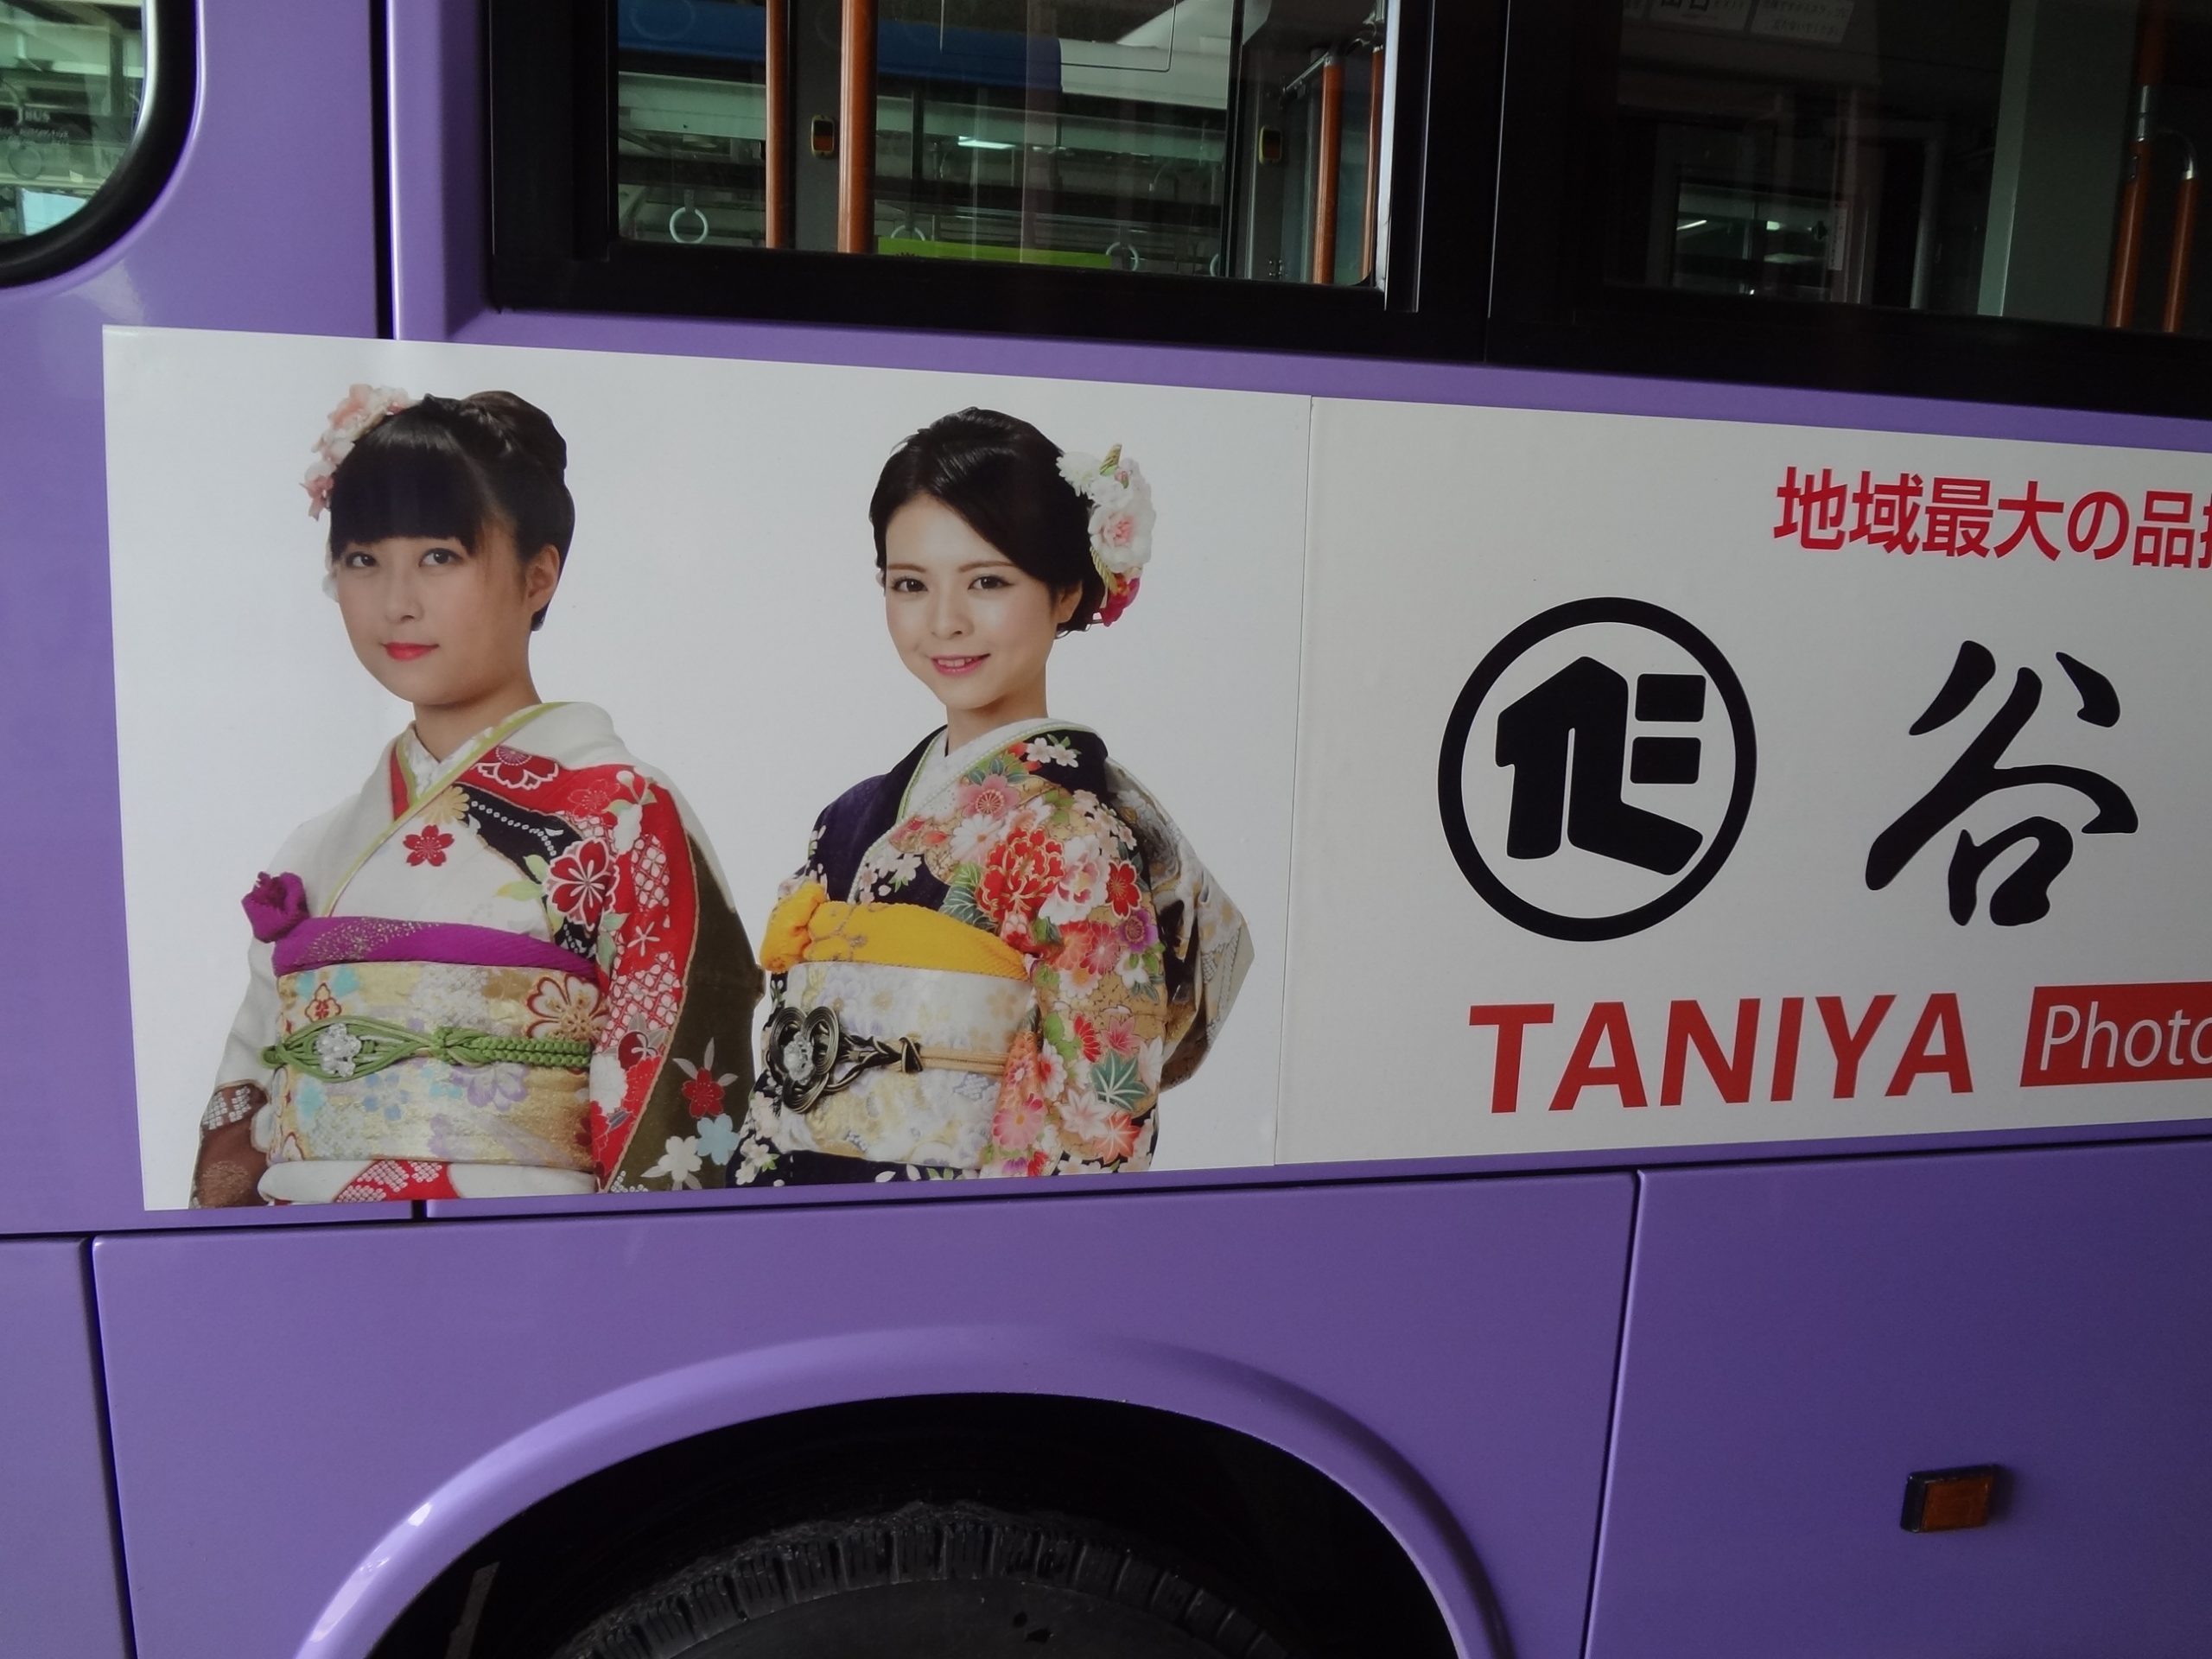 香取市の循環バス広告が新しくなりました 谷屋呉服店